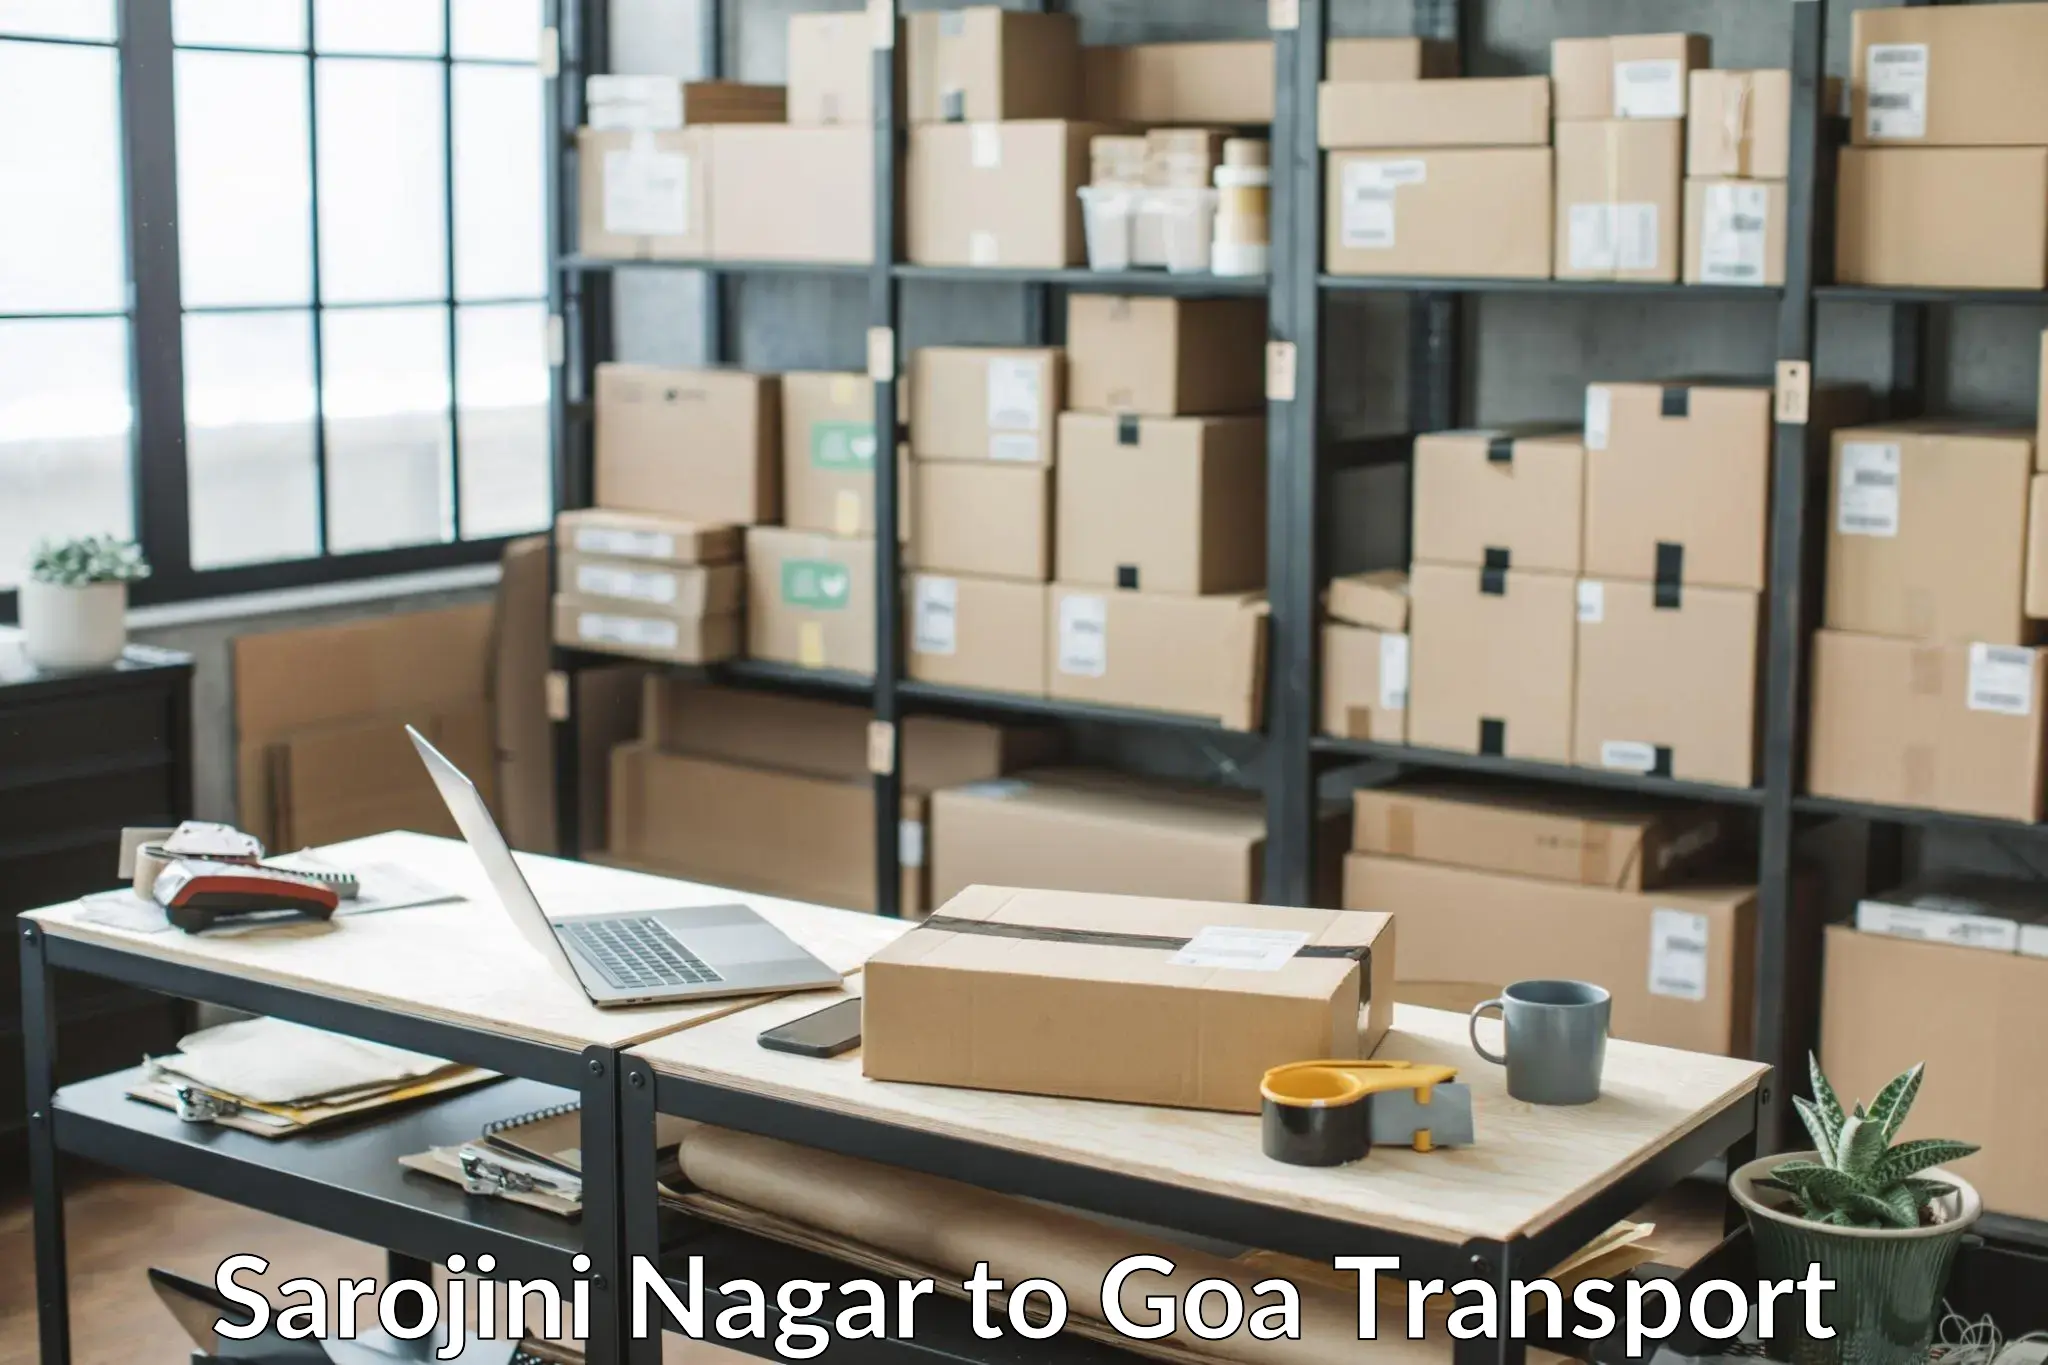 Transport shared services in Sarojini Nagar to Vasco da Gama